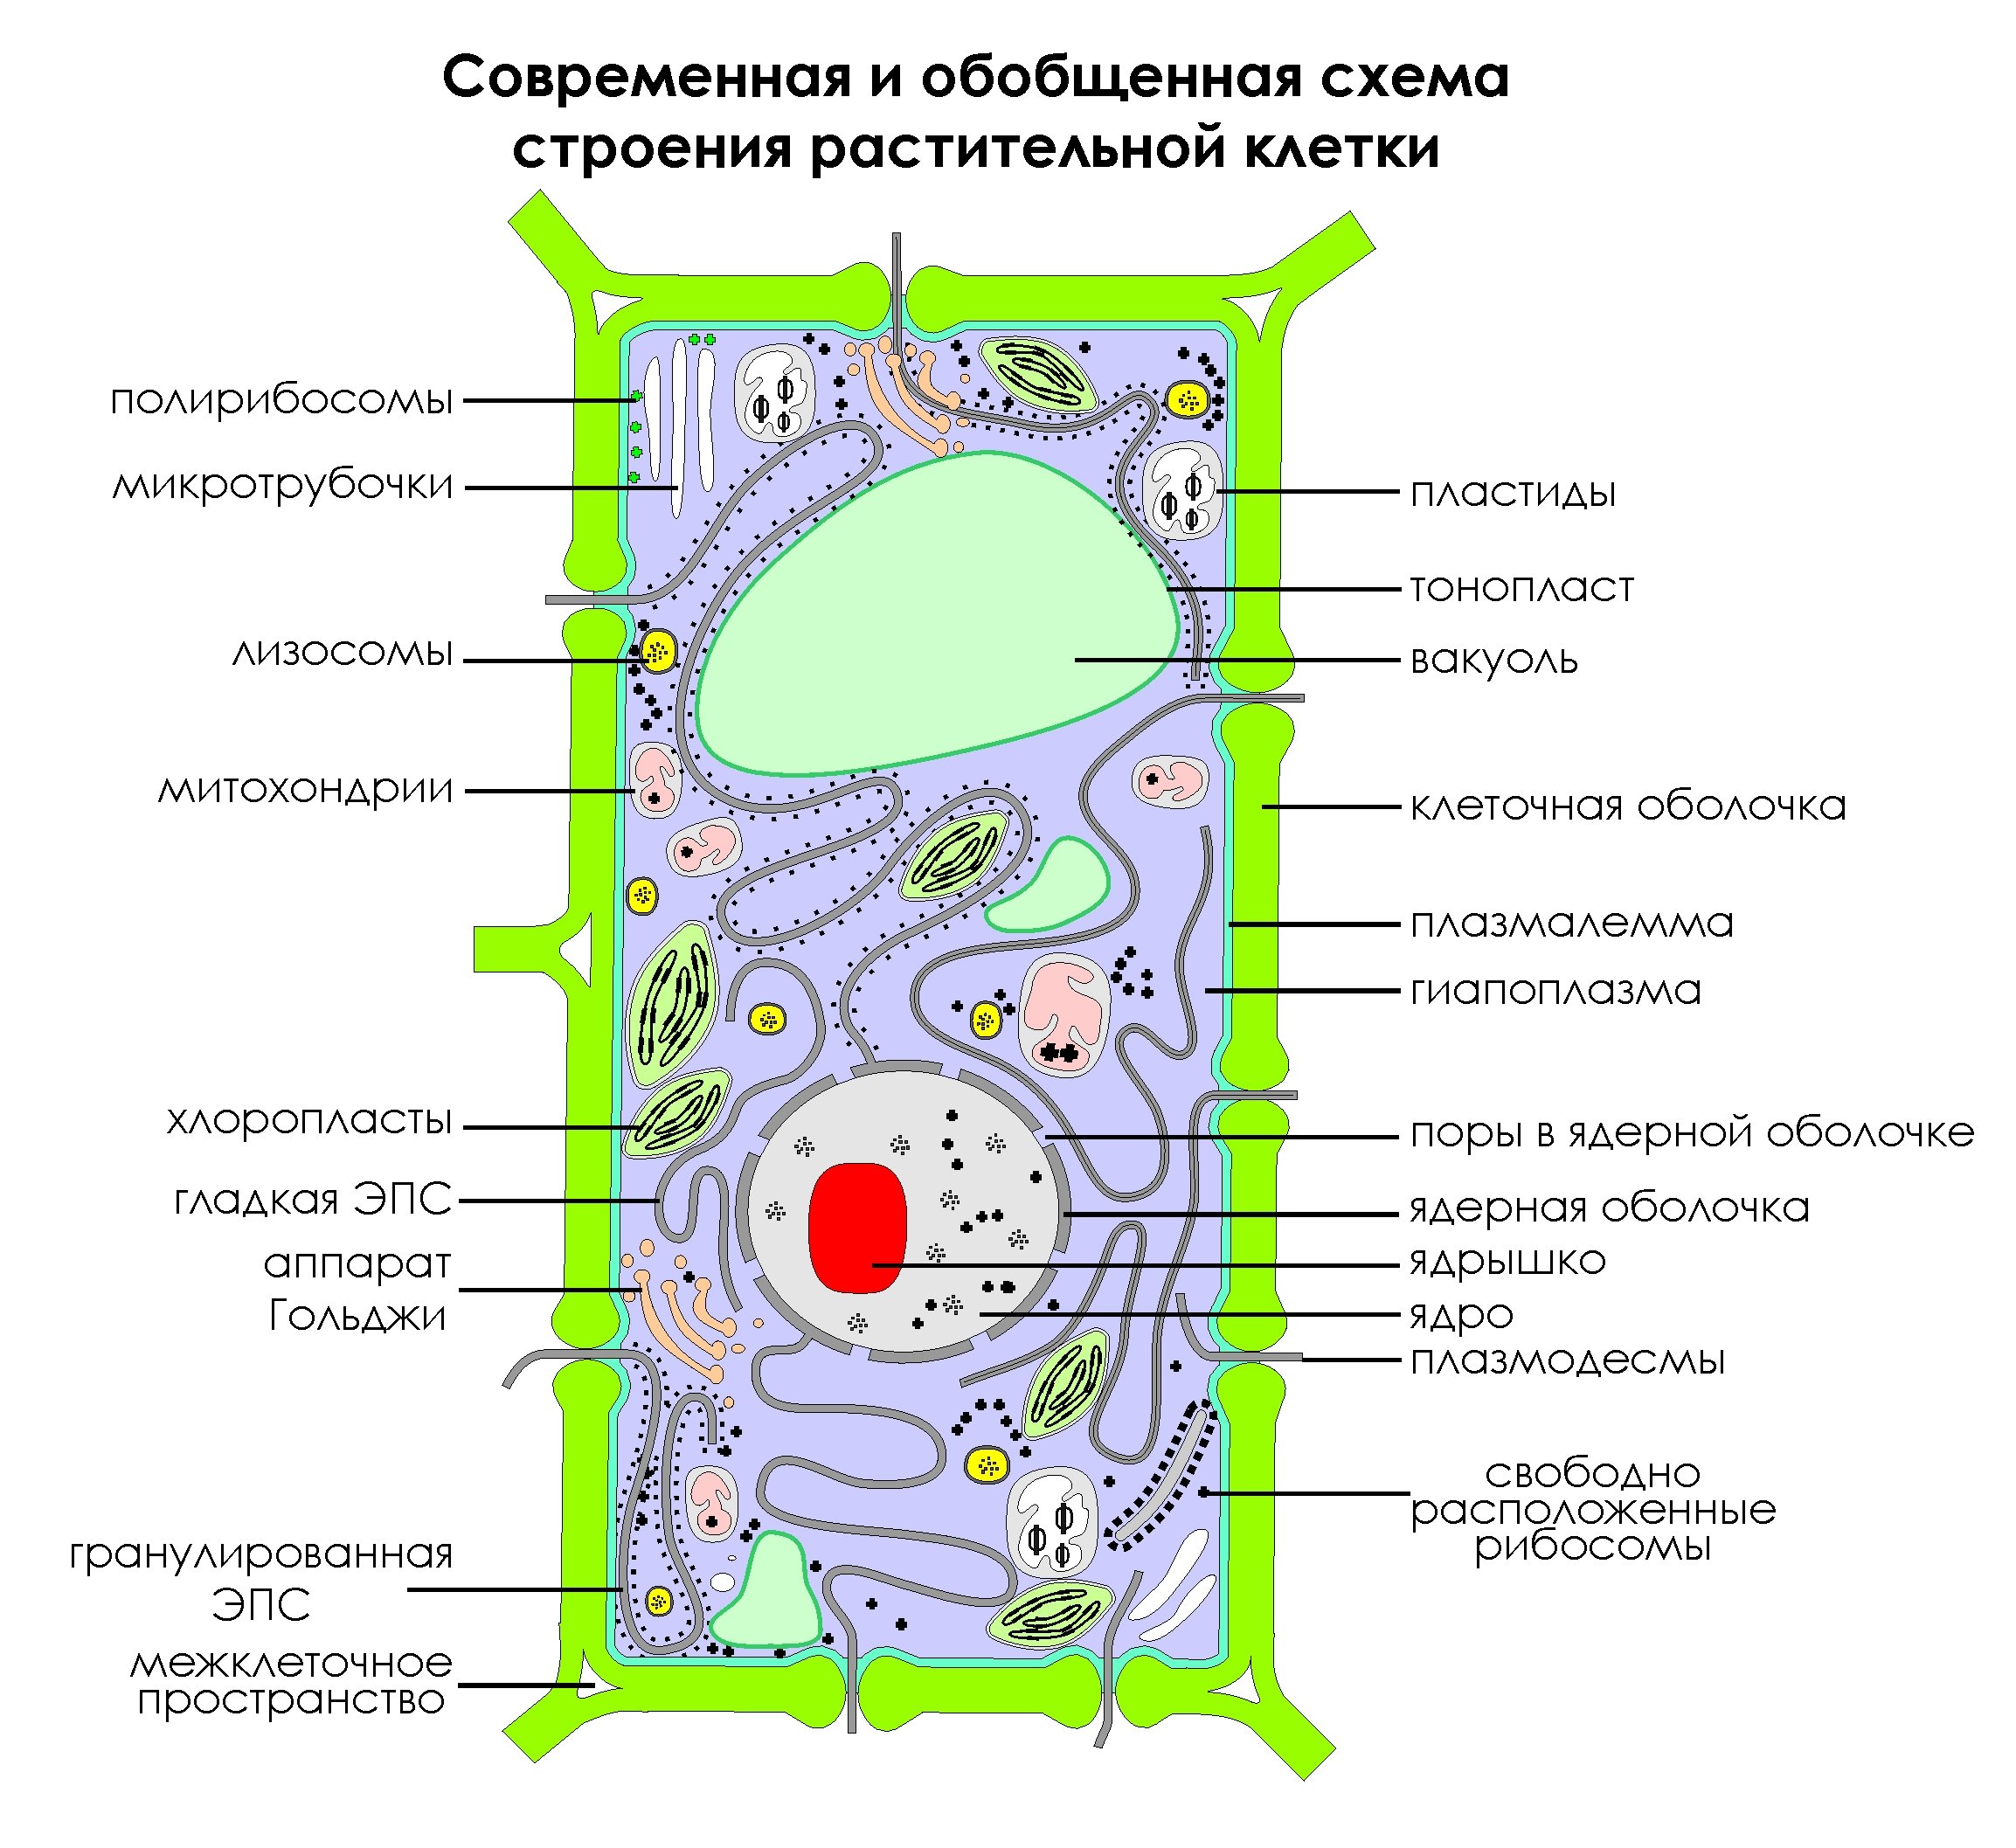 Клетка пояснение. Схема строения клетки растения. Современная обобщенная схема строения растительной клетки. Изображение растительной клетки схема. Обобщенная схема строения растительной клетки.